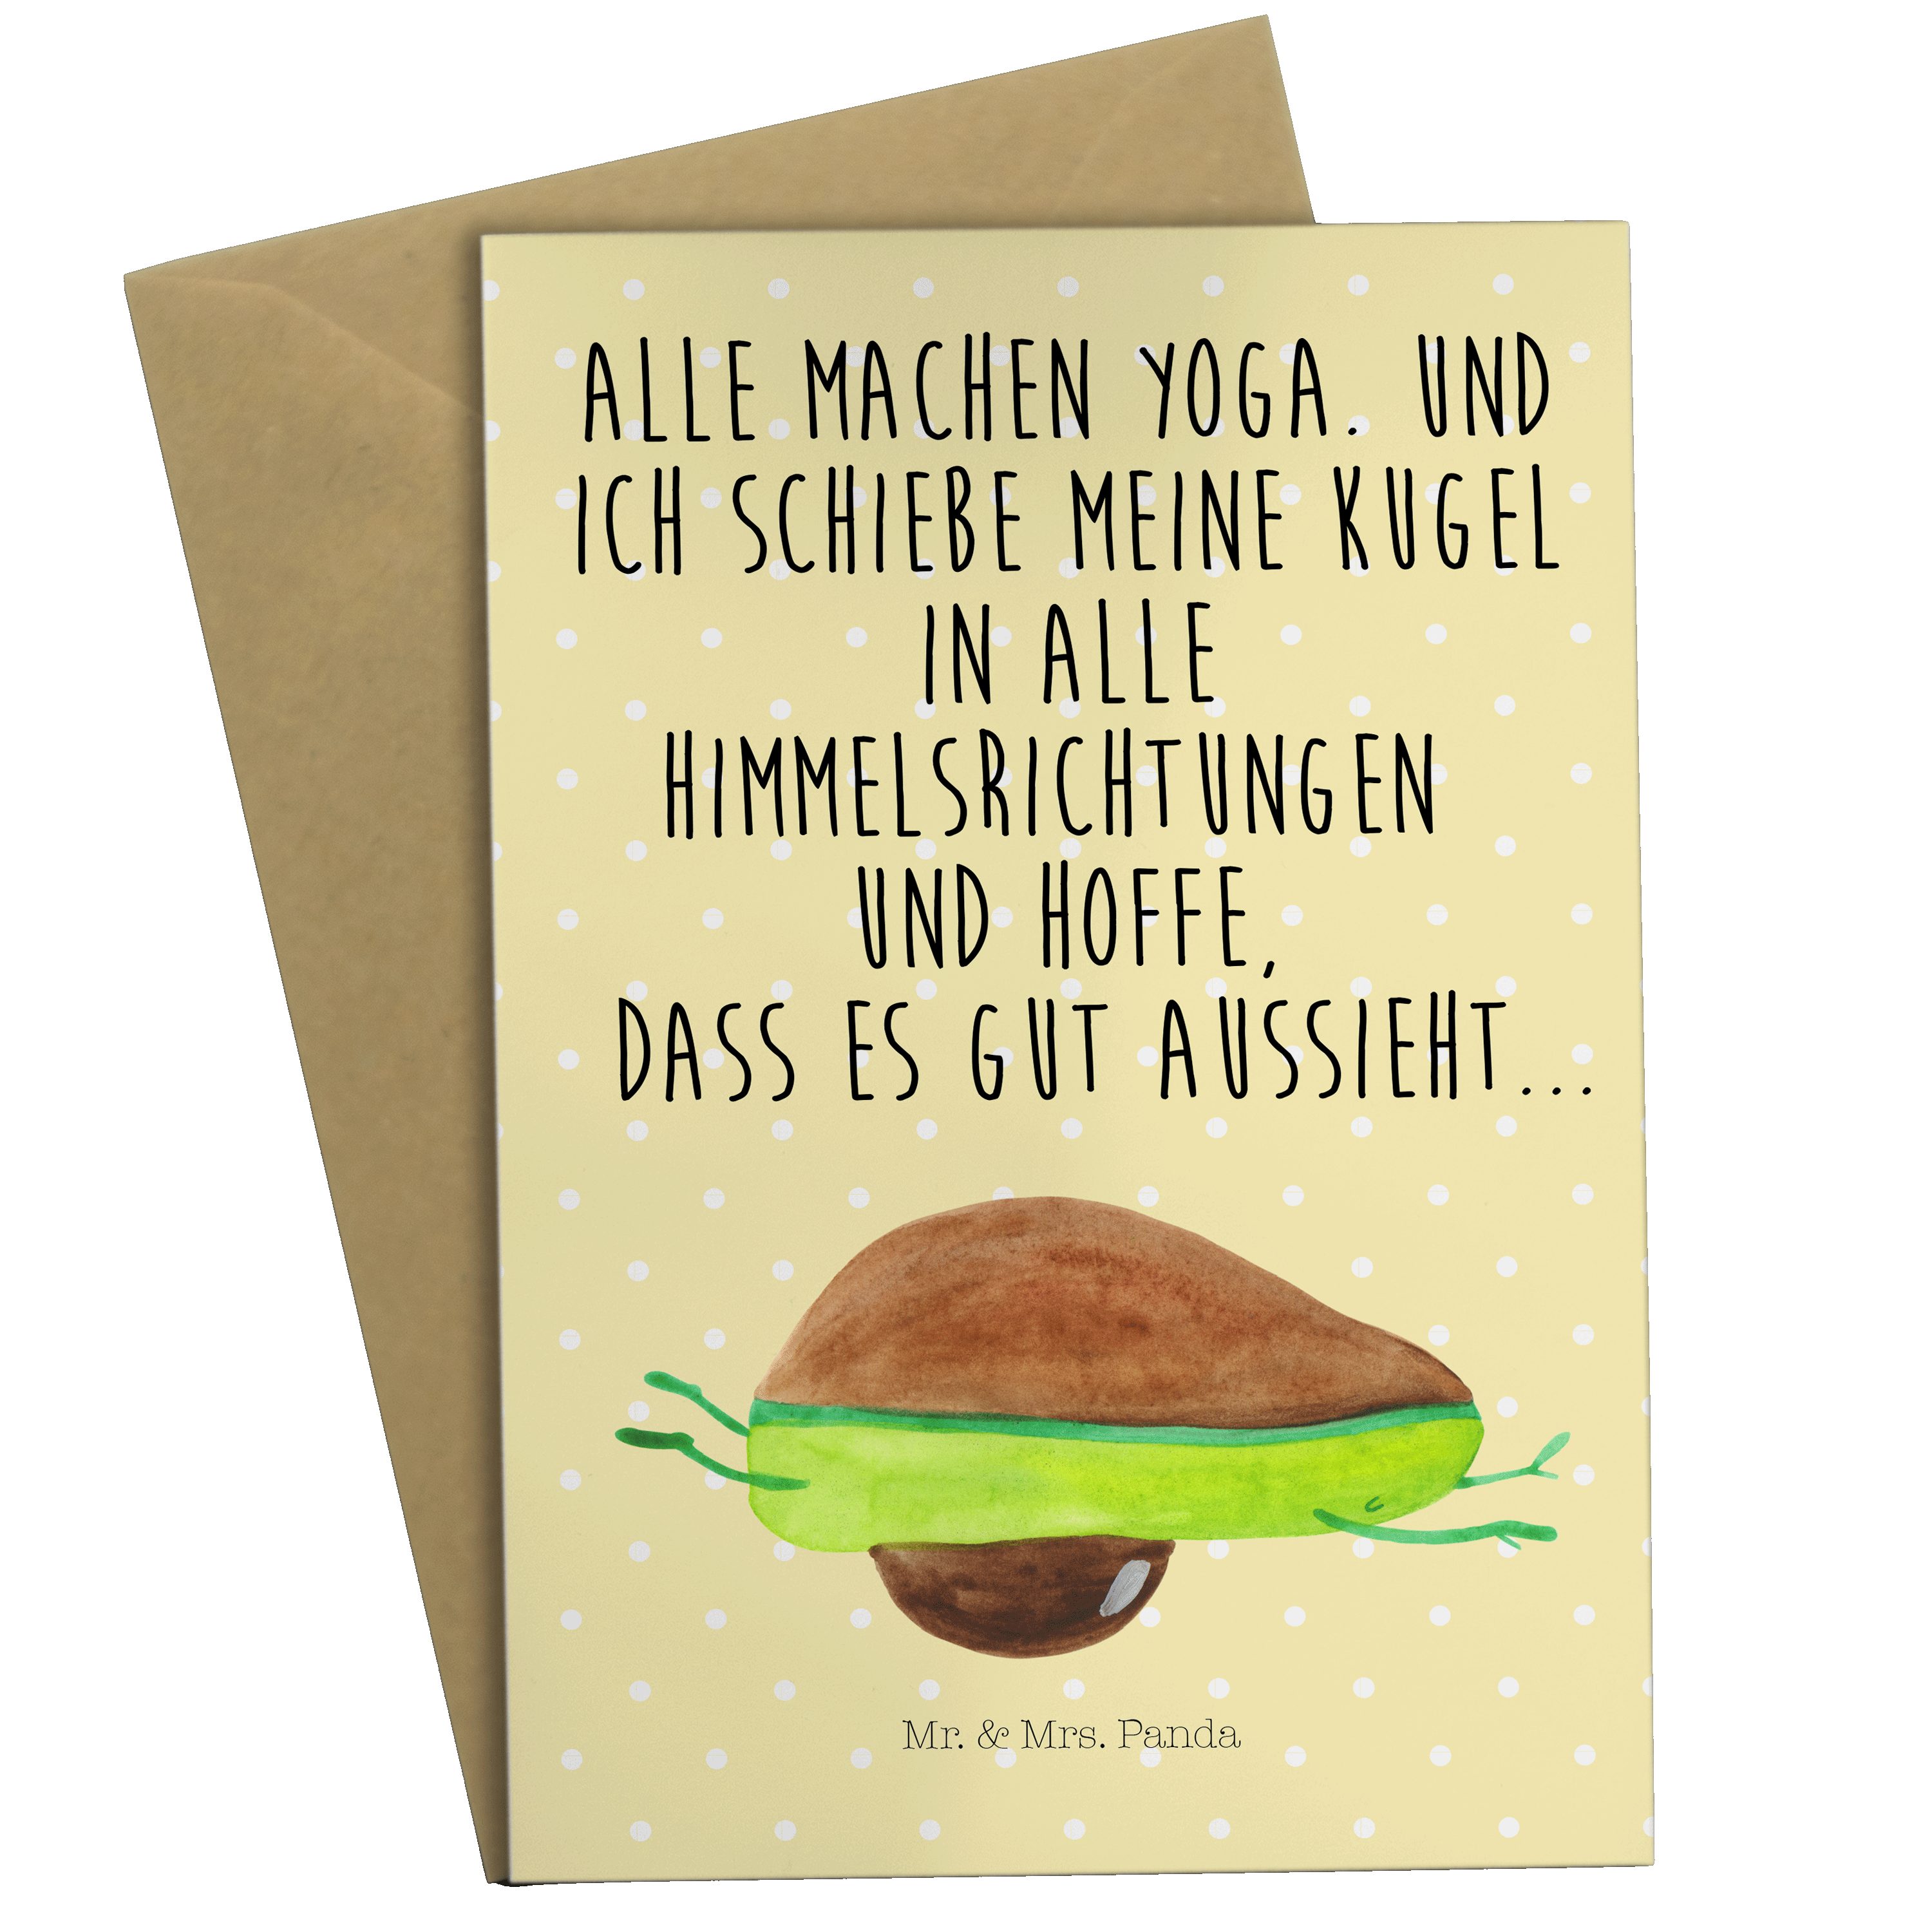 Mr. & - Avocado Yoga Mrs. Panda Hilfe, Grußkarte Gelb Pastell - Geschenk, Glückwunschkarte, Einl